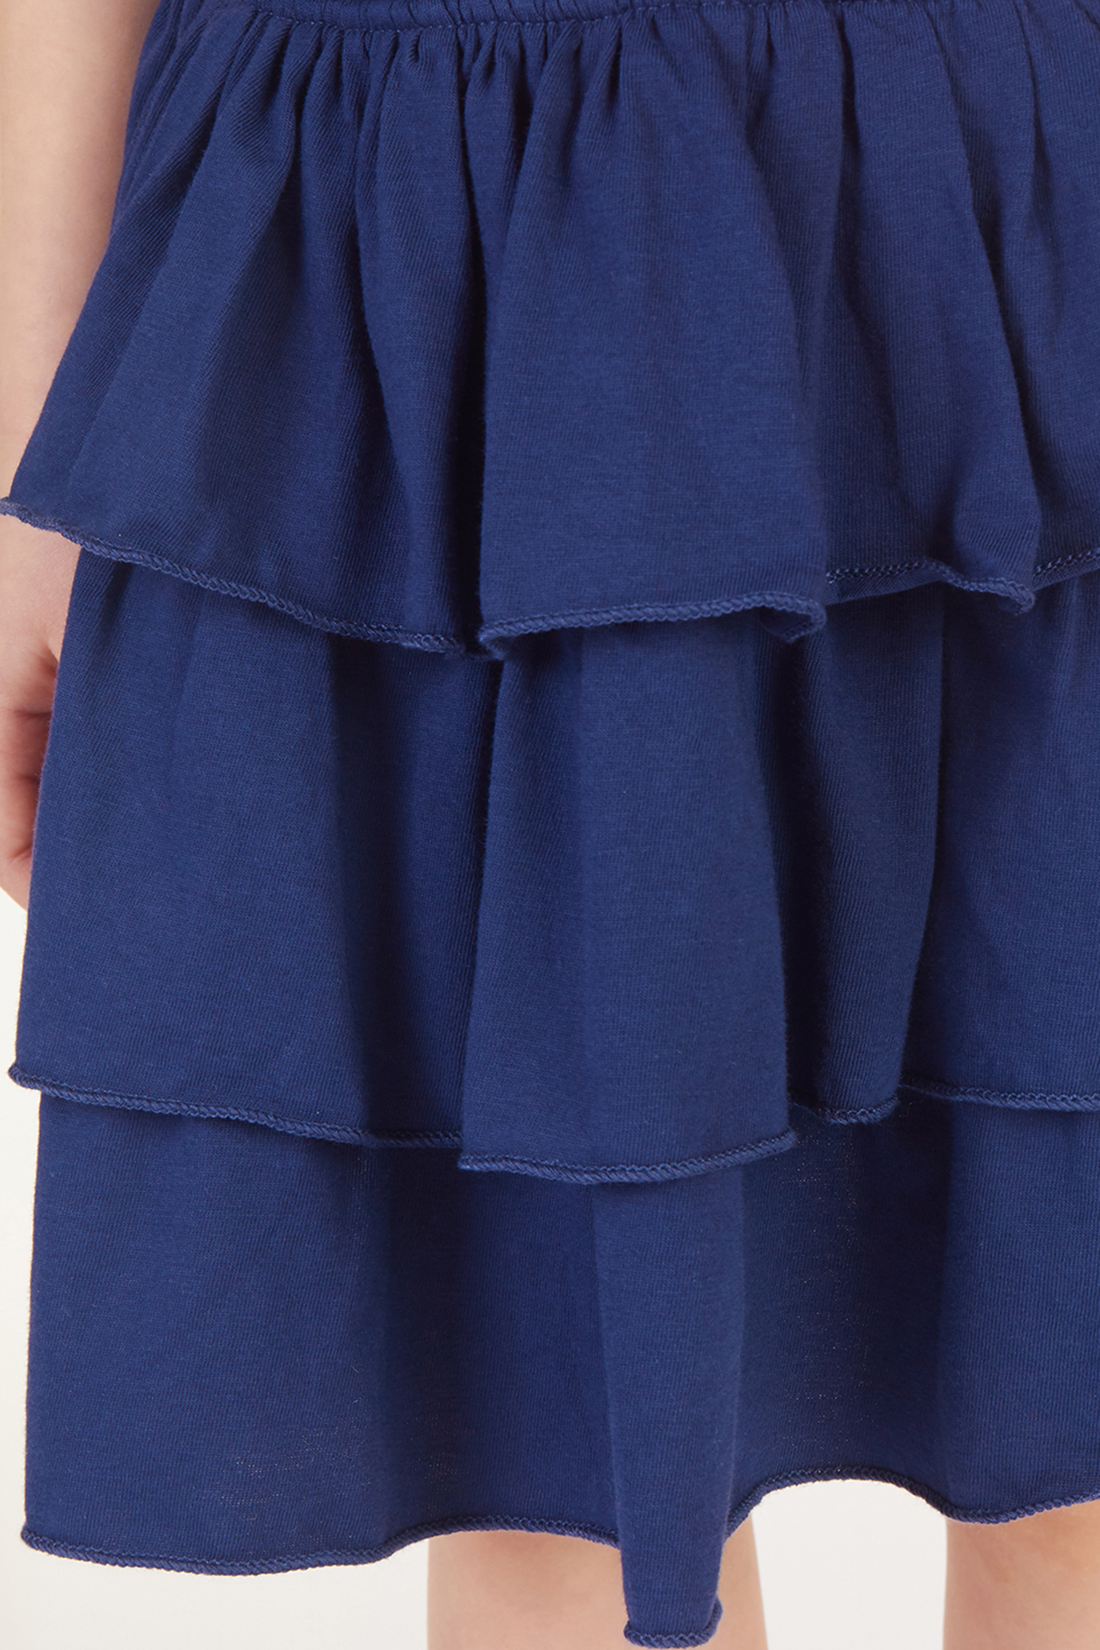 Юбка для девочки (арт. baon BK478004), размер 98-104, цвет синий Юбка для девочки (арт. baon BK478004) - фото 5